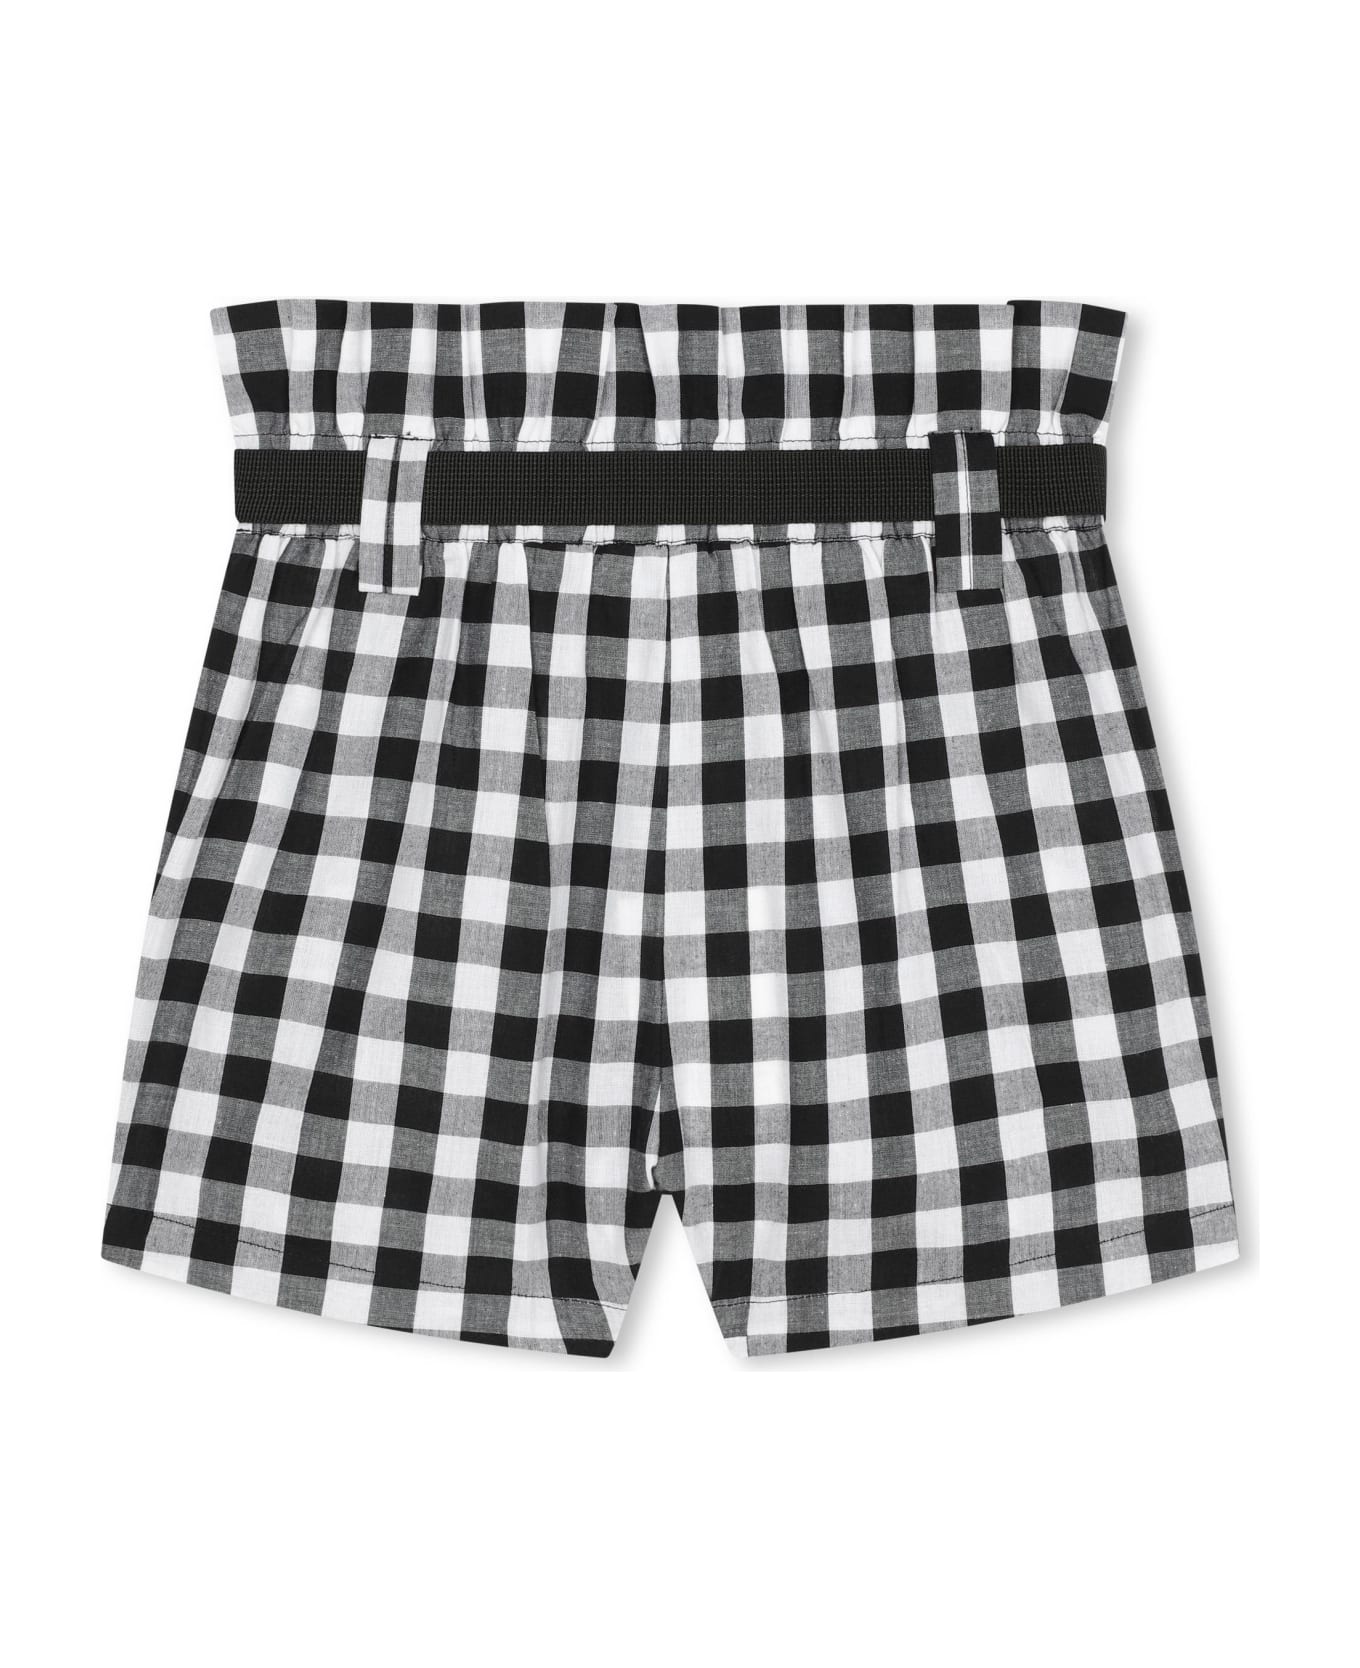 DKNY Shorts With Logo - Black ボトムス